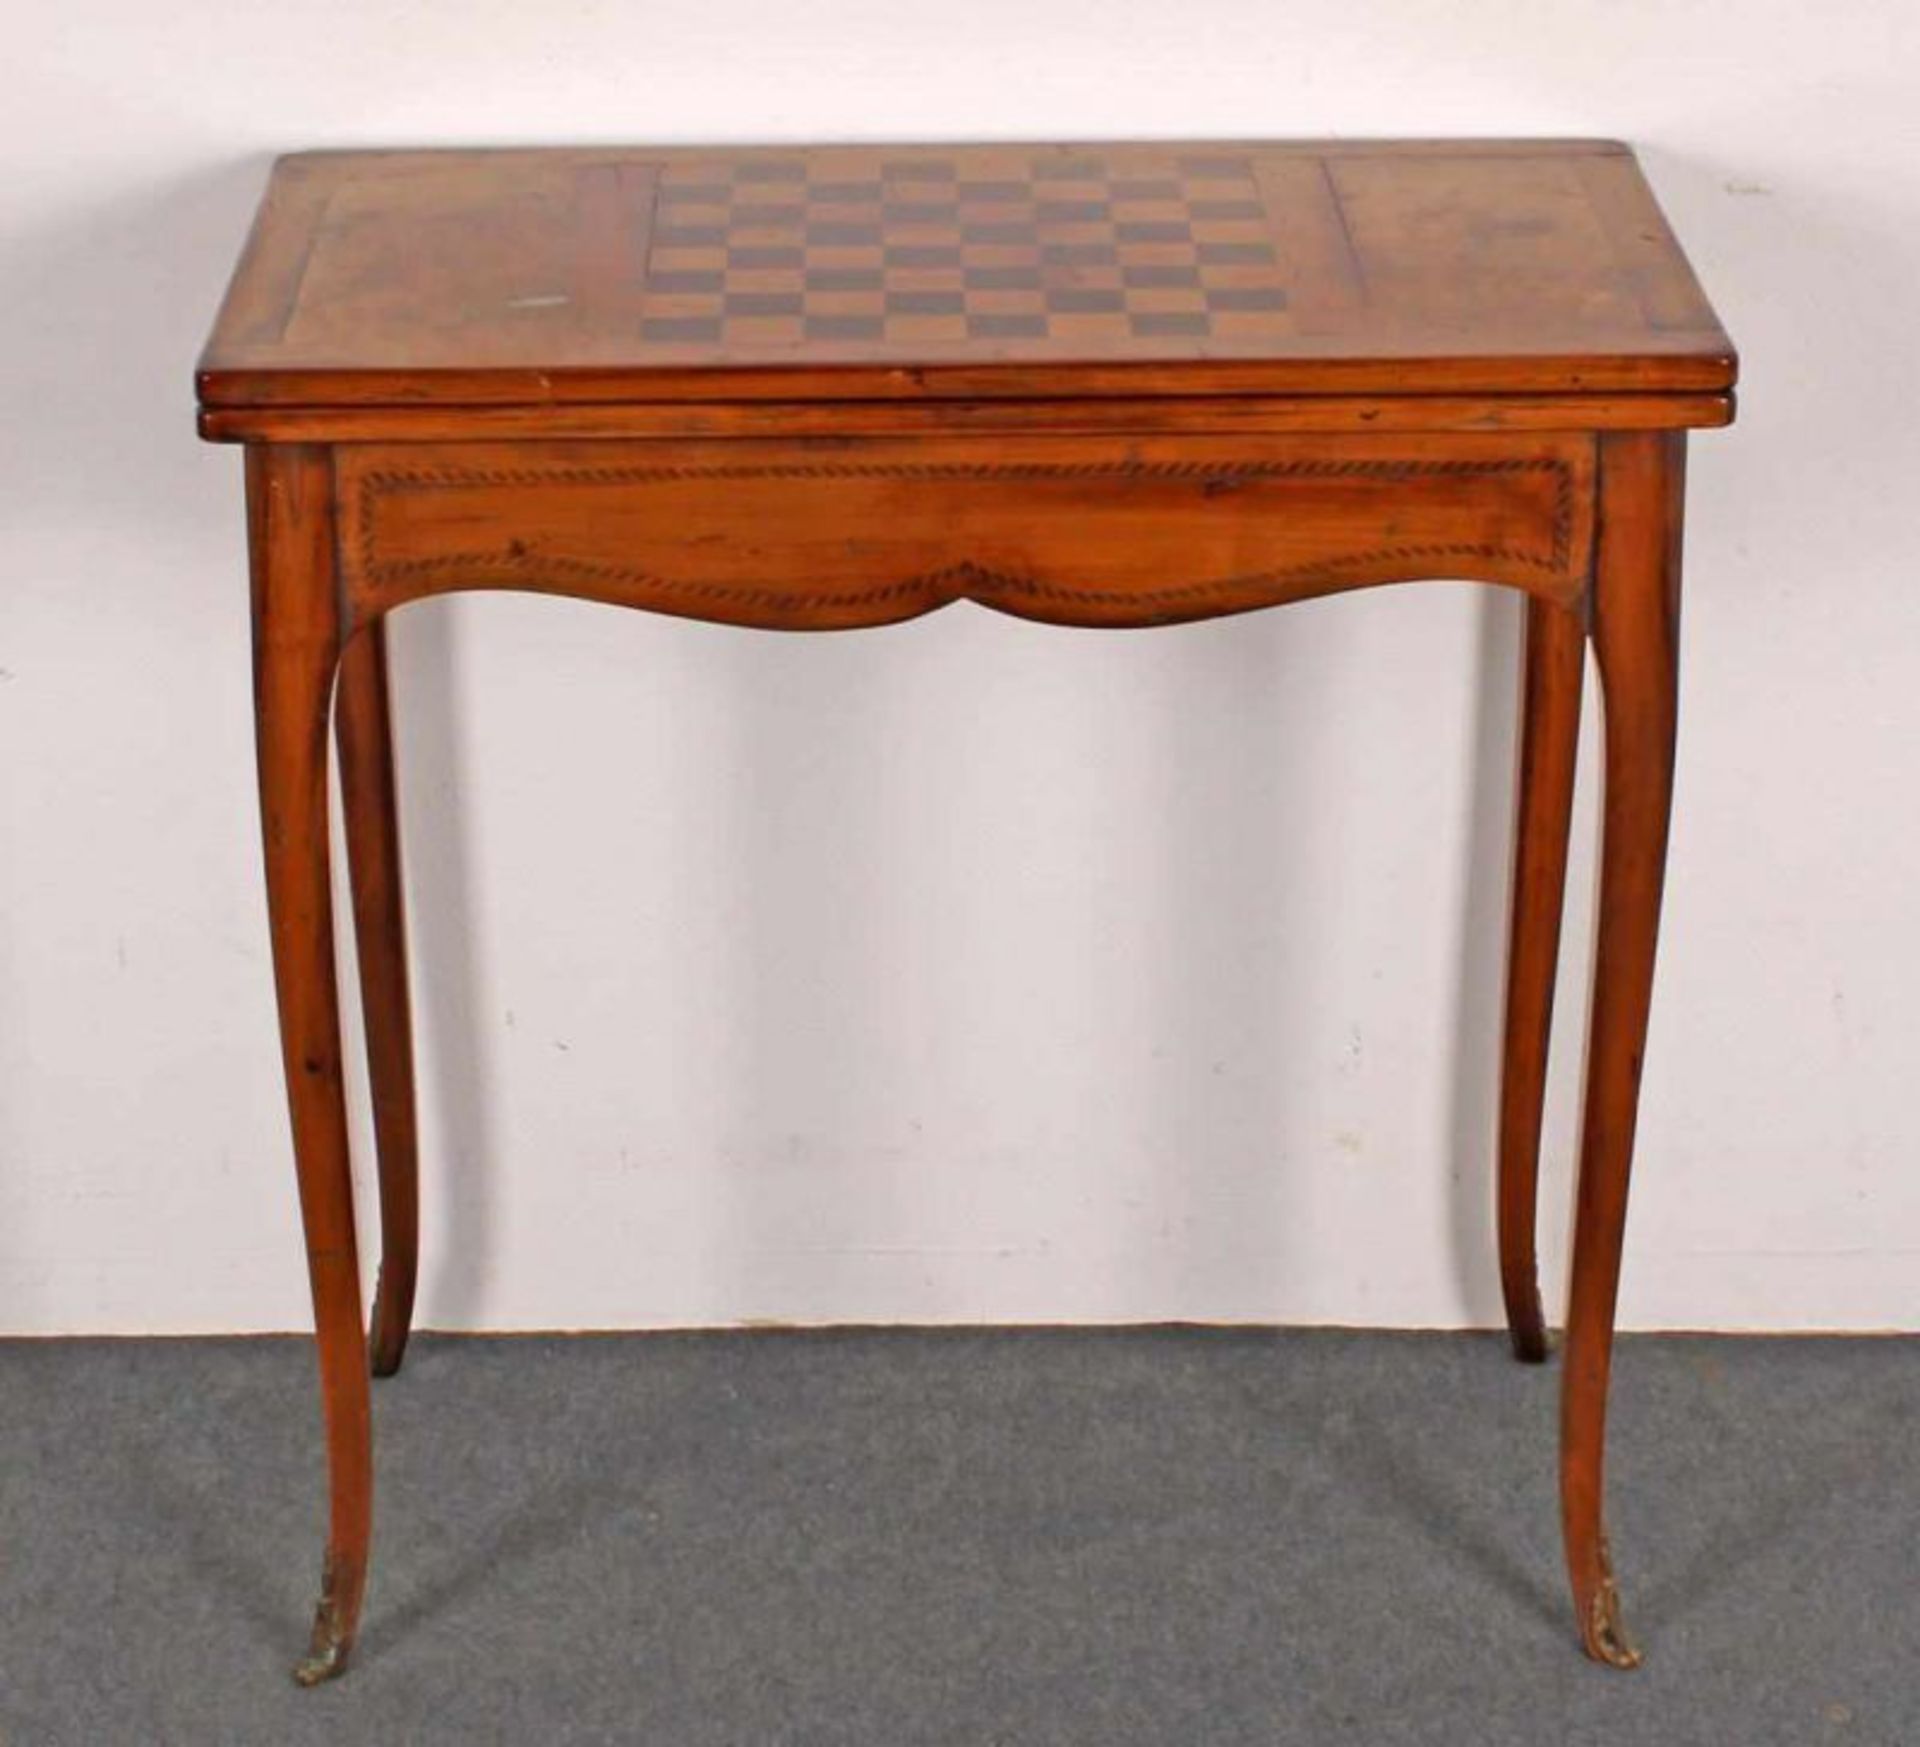 Spieltisch, 19. Jh., Nussbaum u.a., Platte mit eingelegtem Schachbrett, aufklappbar, innen